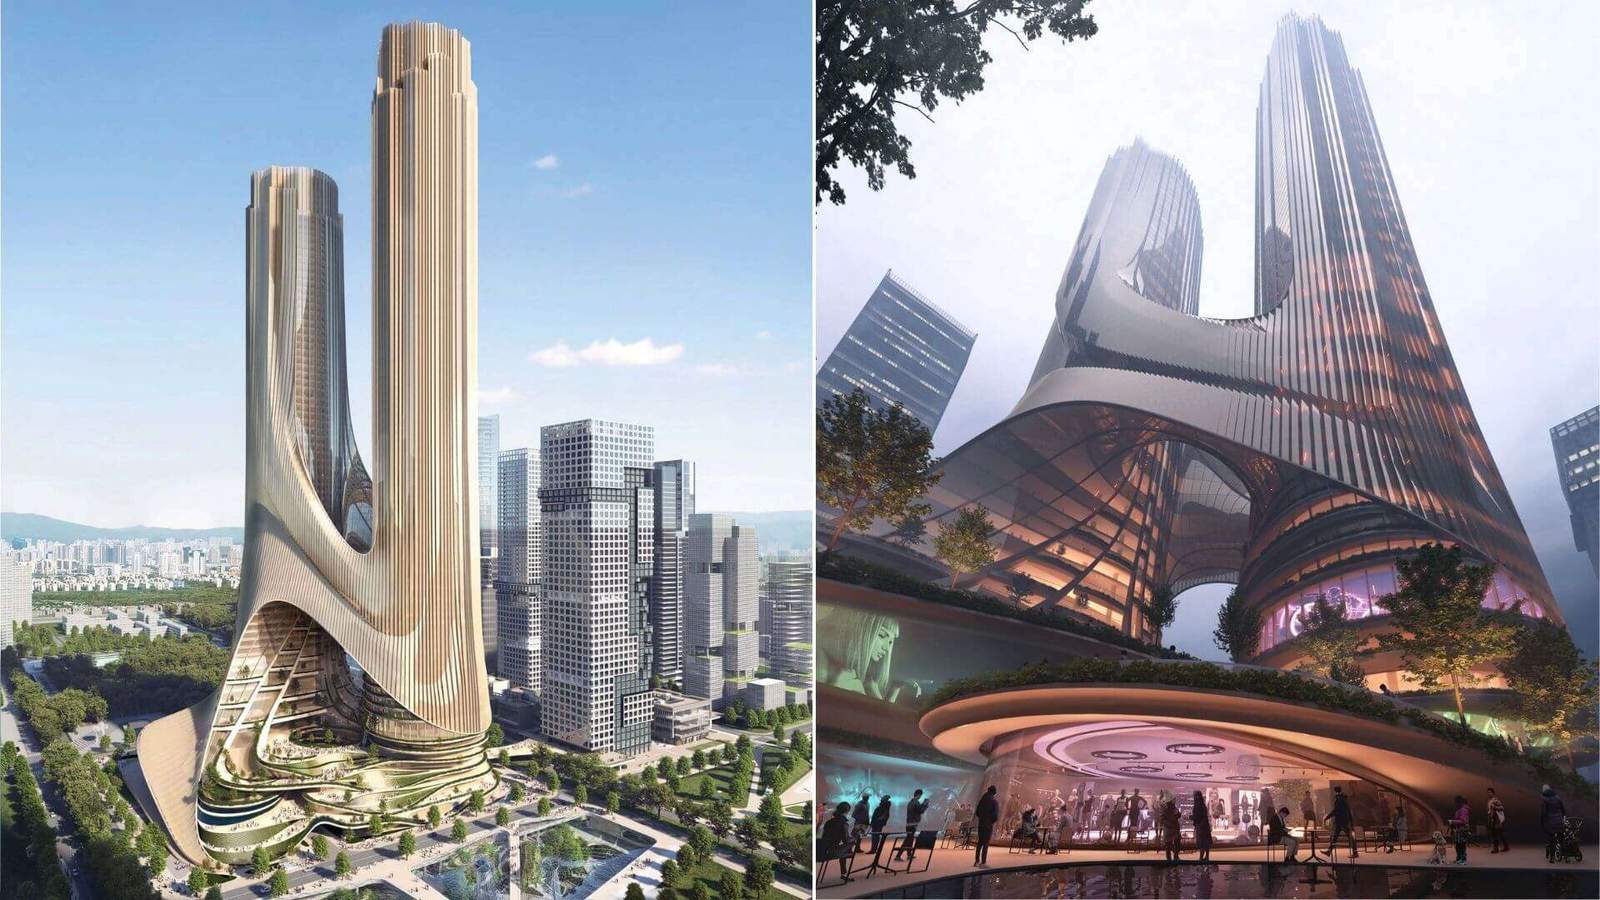 This futuristic mega skyscraper is also a park